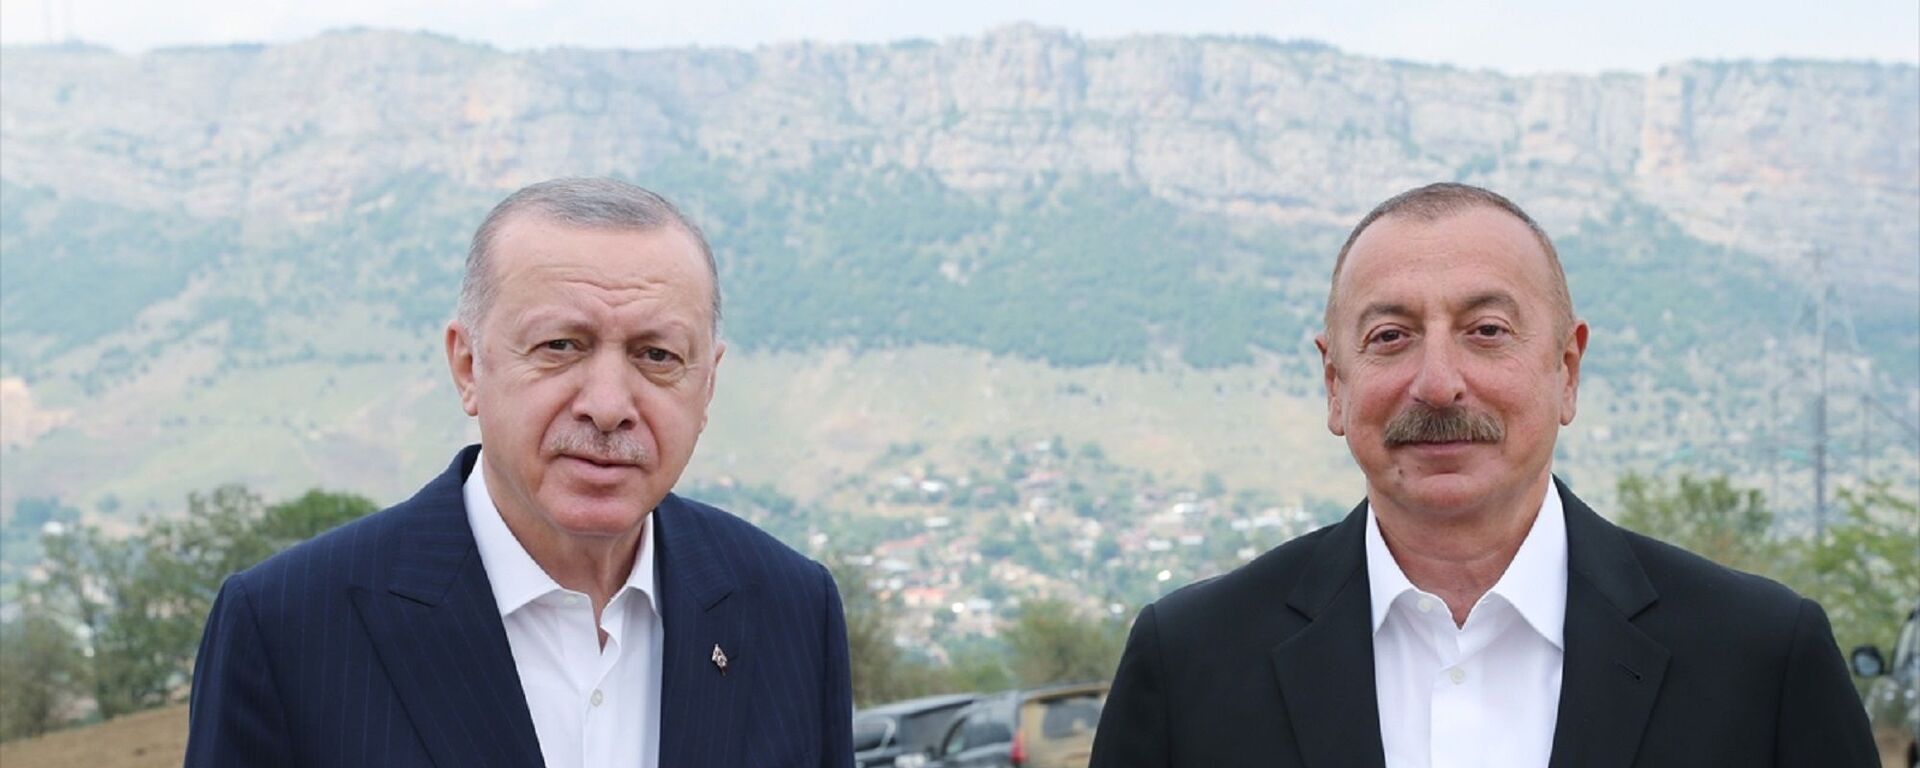 Türkiye Cumhurbaşkanı Recep Tayyip Erdoğan, Dağlık Karabağ'ın Şuşa şehrine geldi. Erdoğan, burada Azerbaycan Cumhurbaşkanı İlham Aliyev ile sohbet etti. - Sputnik Türkiye, 1920, 06.08.2021